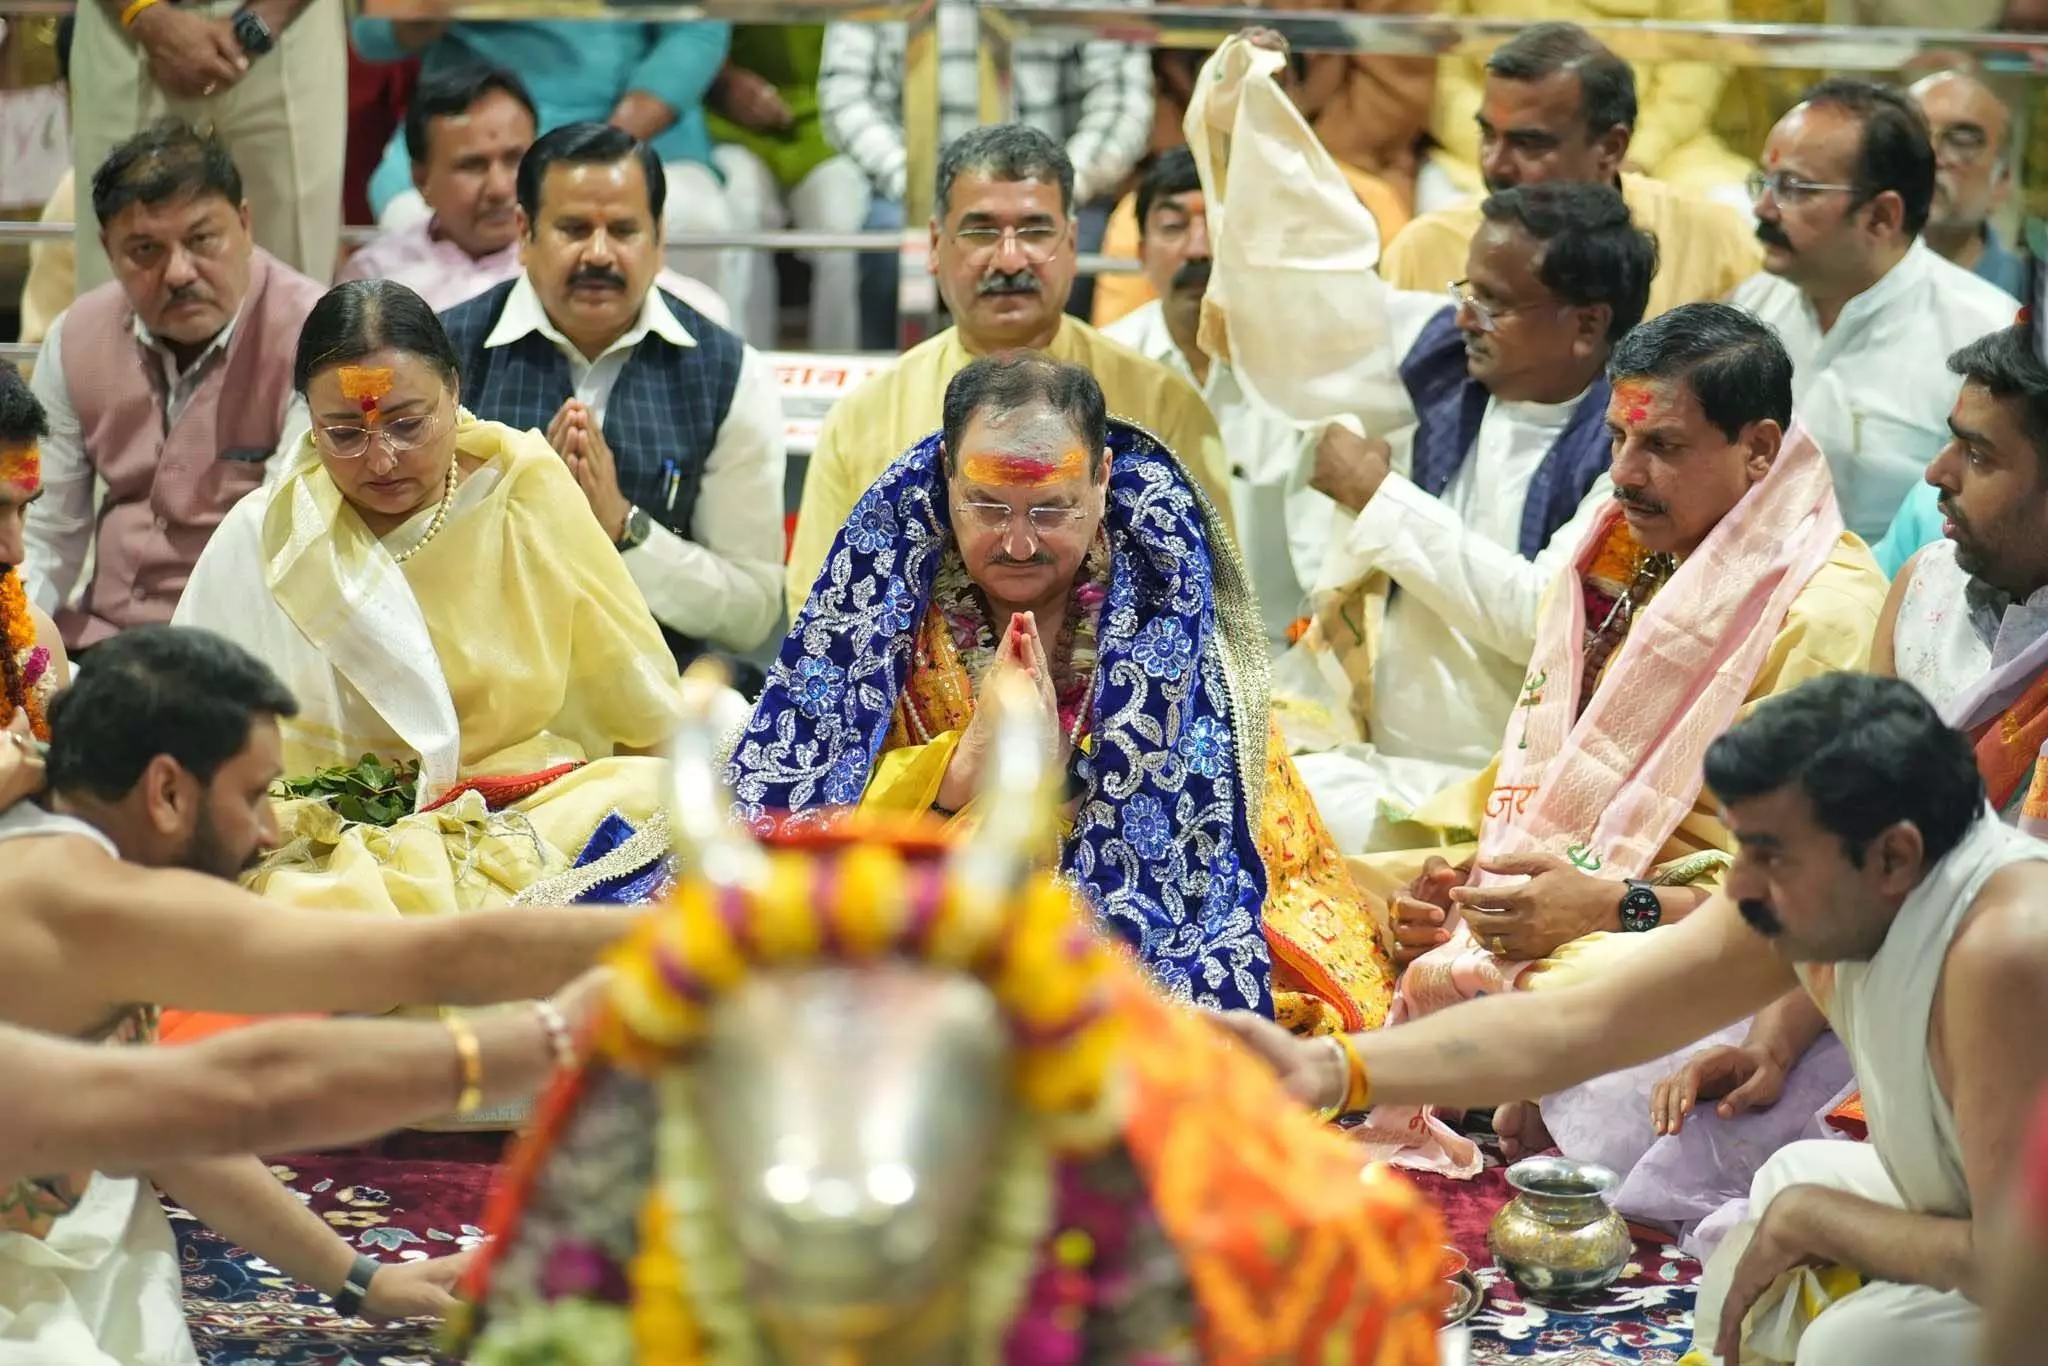 भाजपा के राष्ट्रीय अध्यक्ष जेपी नड्डा ने महाकाल मंदिर में की विशेष पूजा-अर्चना